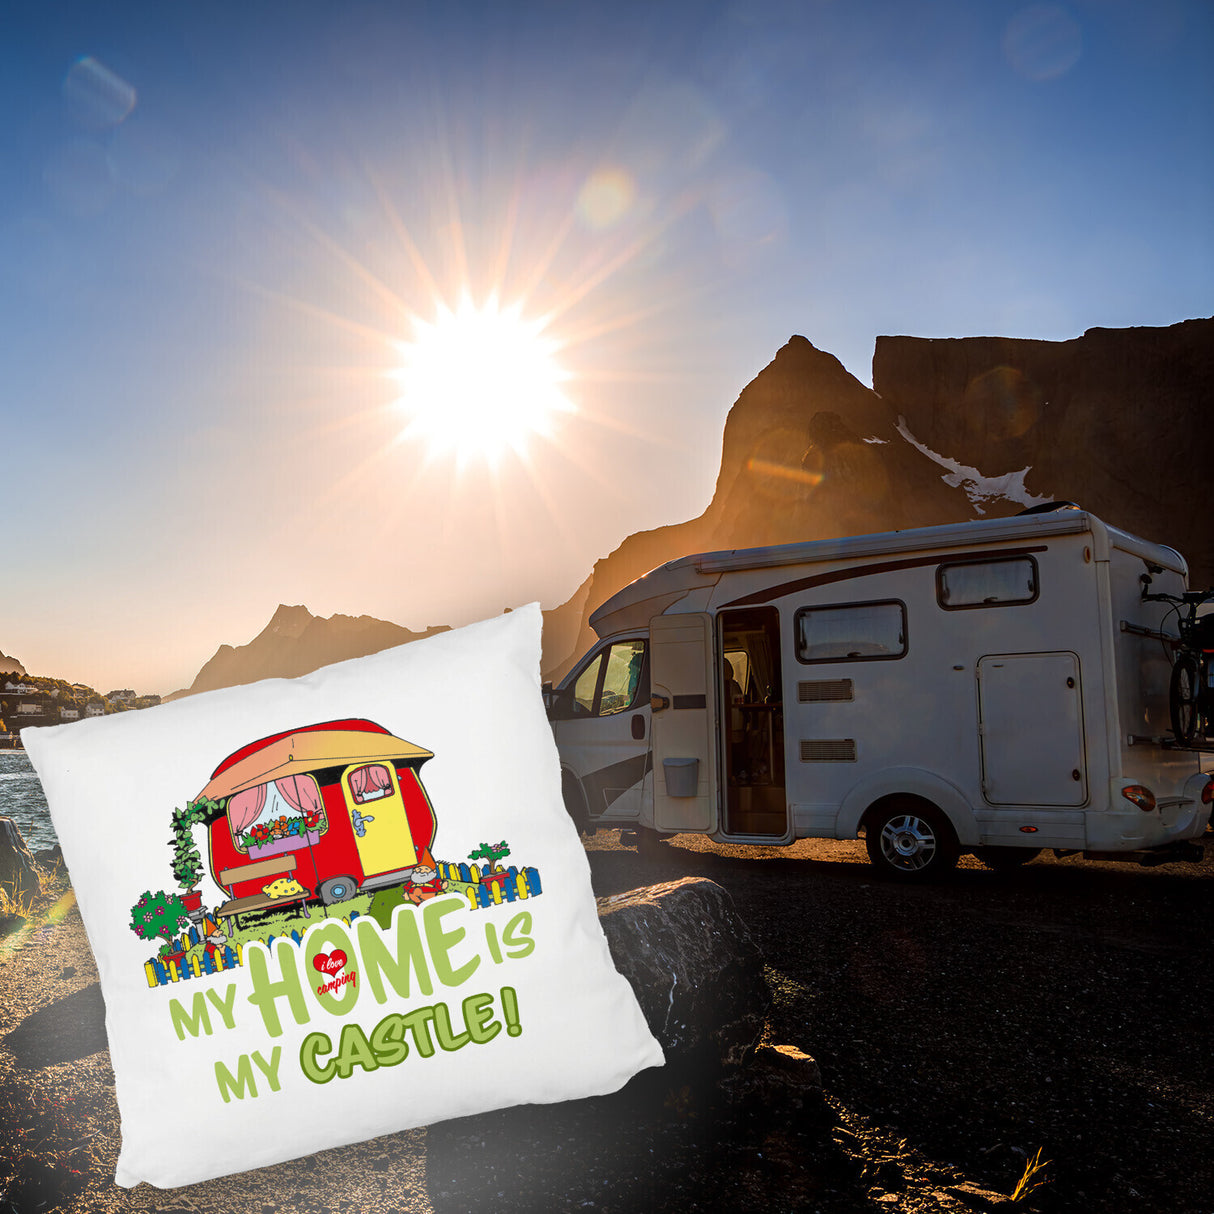 Wohnwagen Kissen mit Spruch My Home is my castle! I love camping